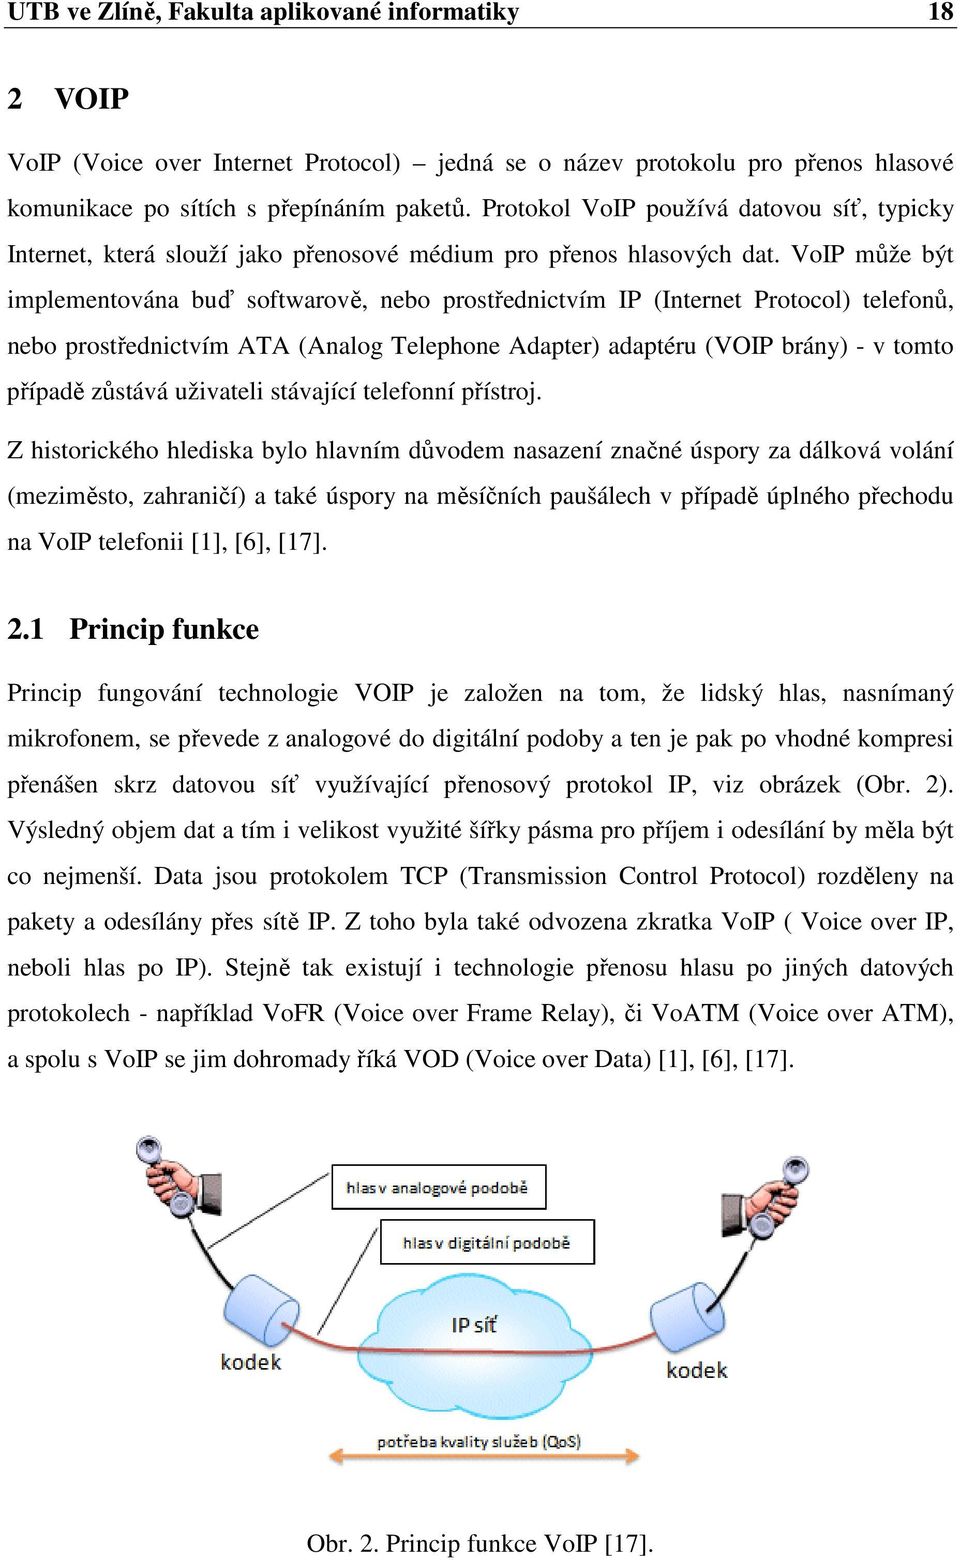 VoIP může být implementována buď softwarově, nebo prostřednictvím IP (Internet Protocol) telefonů, nebo prostřednictvím ATA (Analog Telephone Adapter) adaptéru (VOIP brány) - v tomto případě zůstává